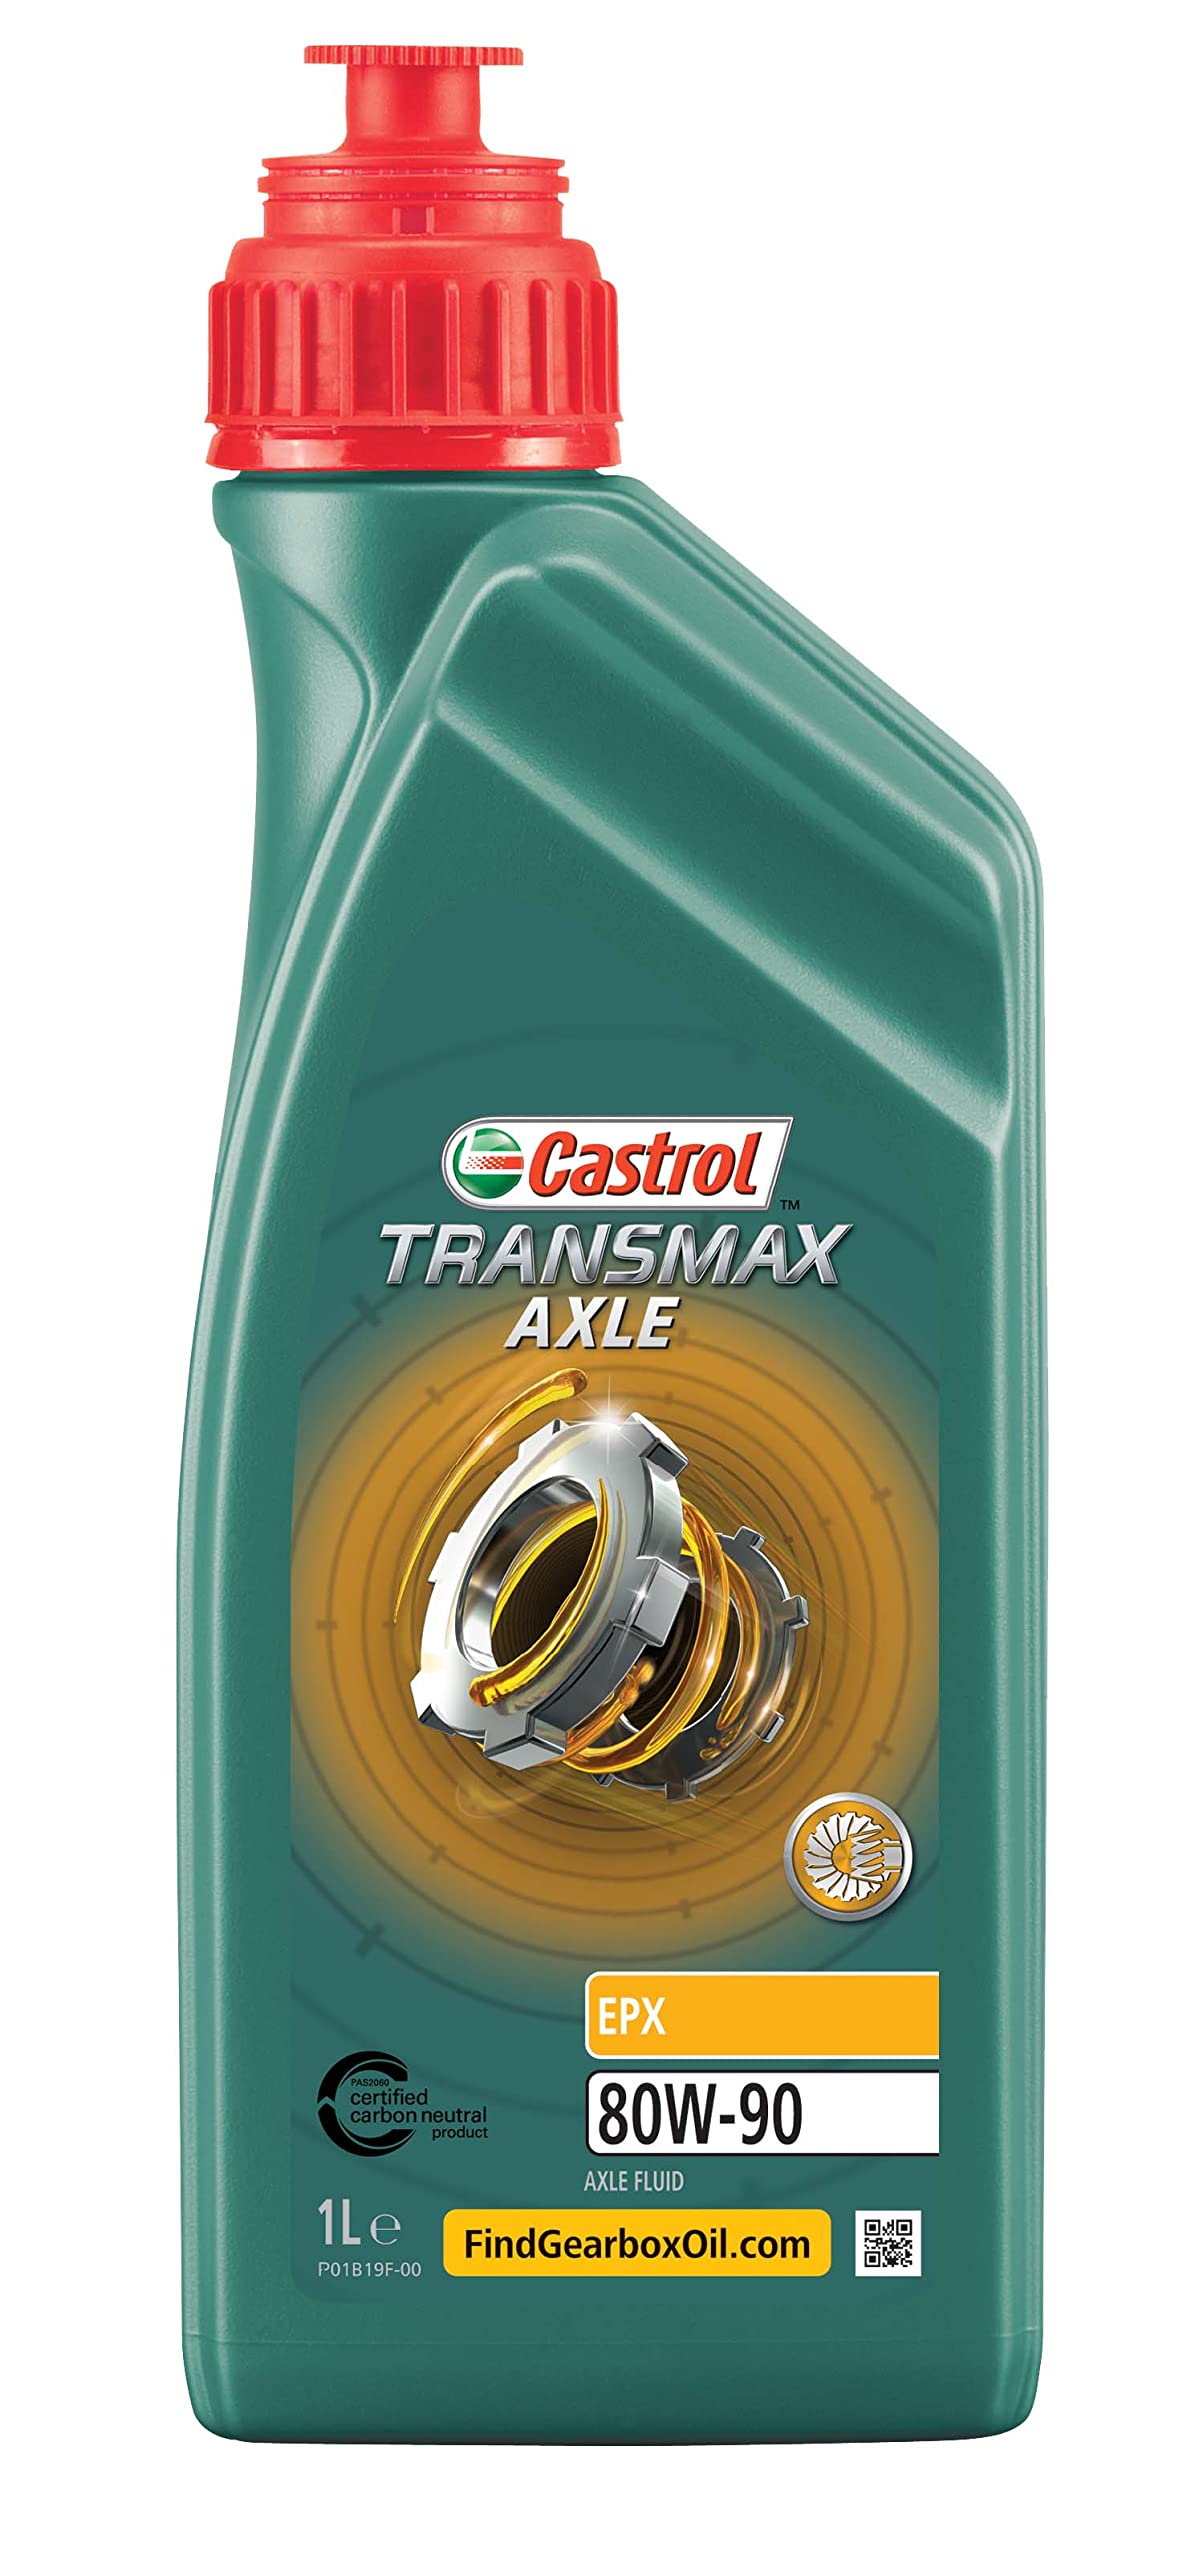 Castrol TRANSMAX Axle EPX 80W-90, 1 Liter von Castrol